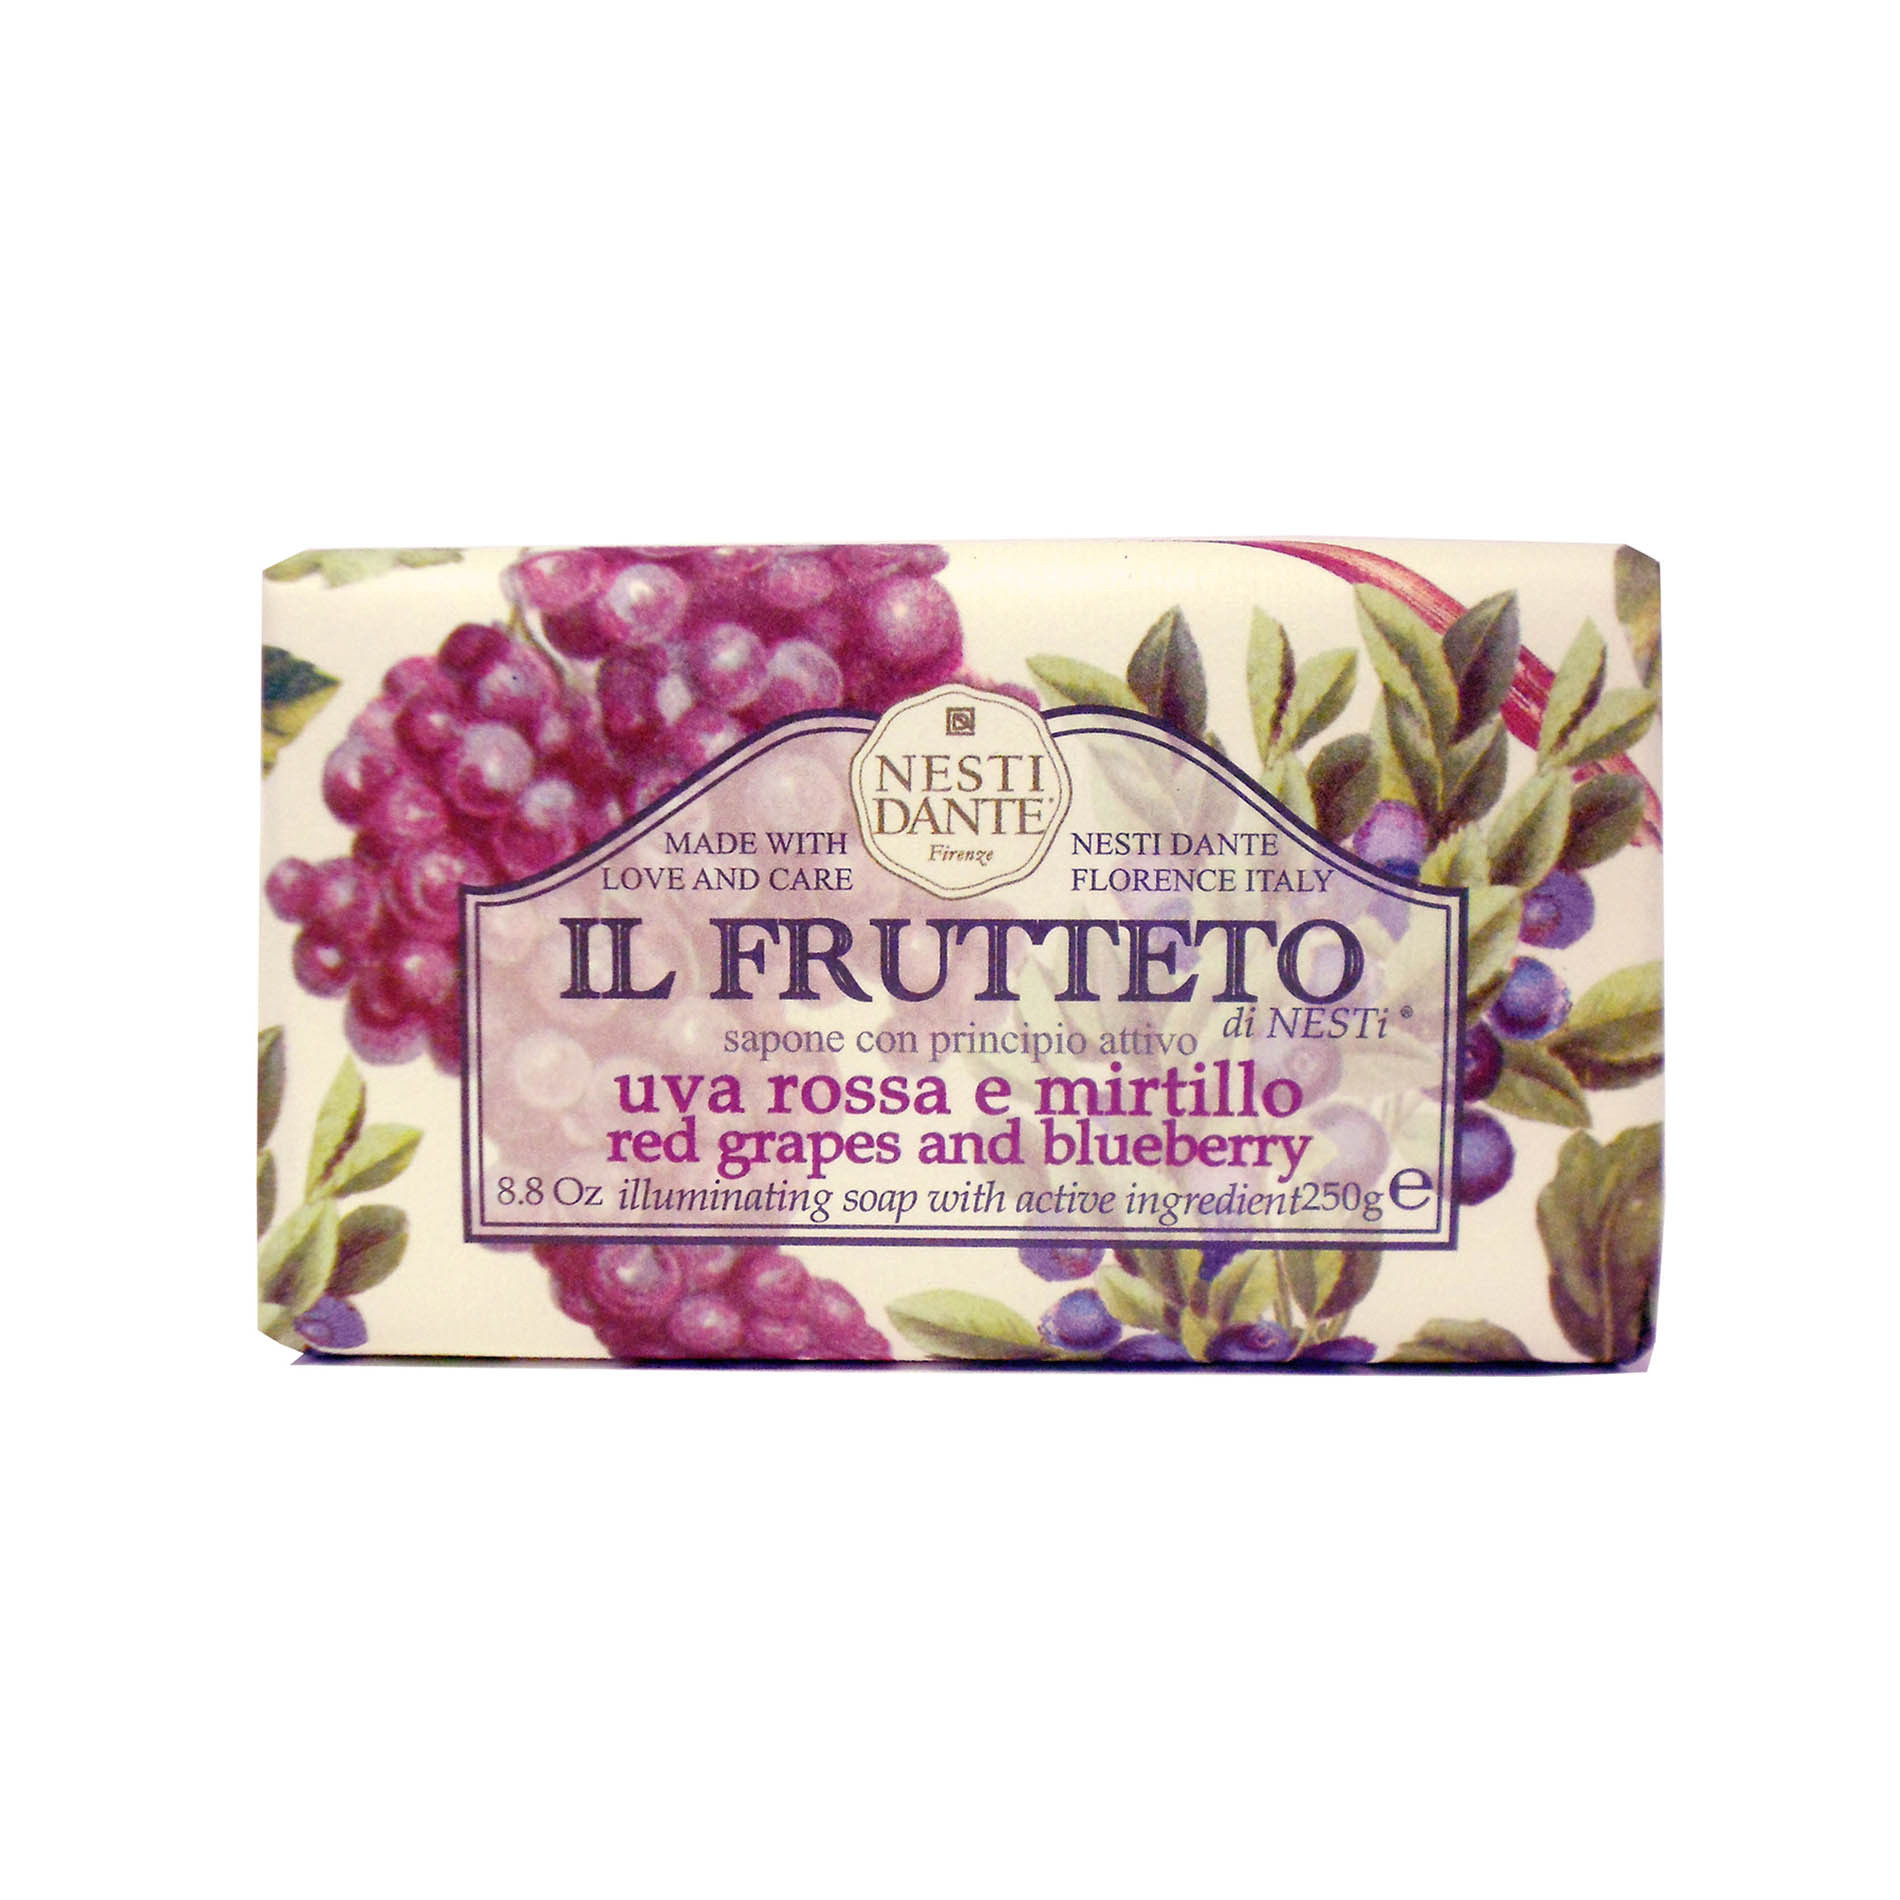 Il Frutteto - Uva Rossa E Mirtillo, Viola, large image number 0